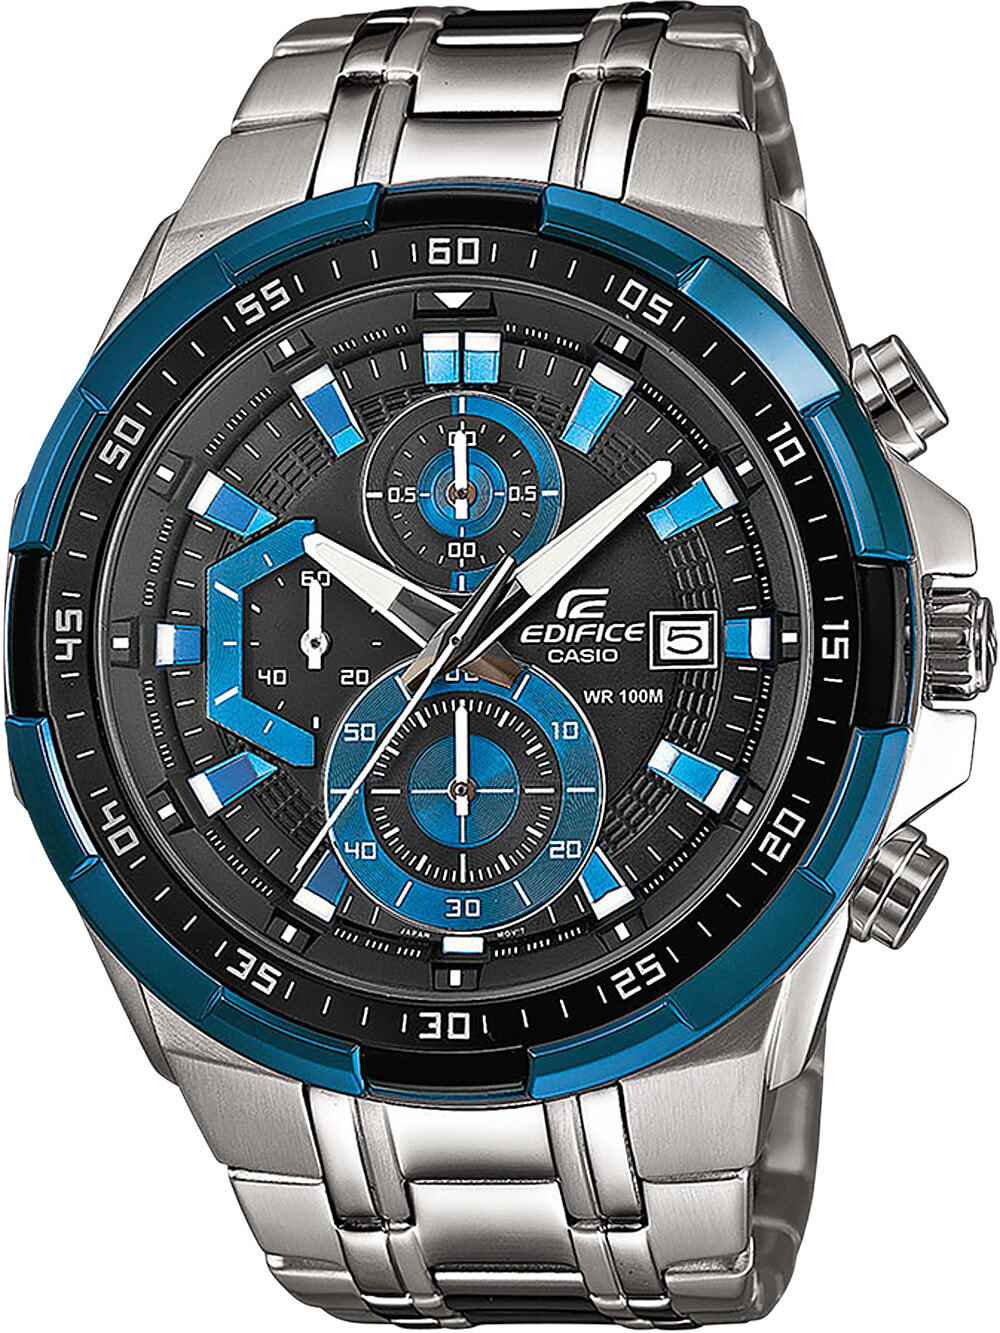 Мужские наручные часы с серебряным браслетом Casio EFR-539D-1A2VUEF Edifice Chronograph 49mm 10ATM